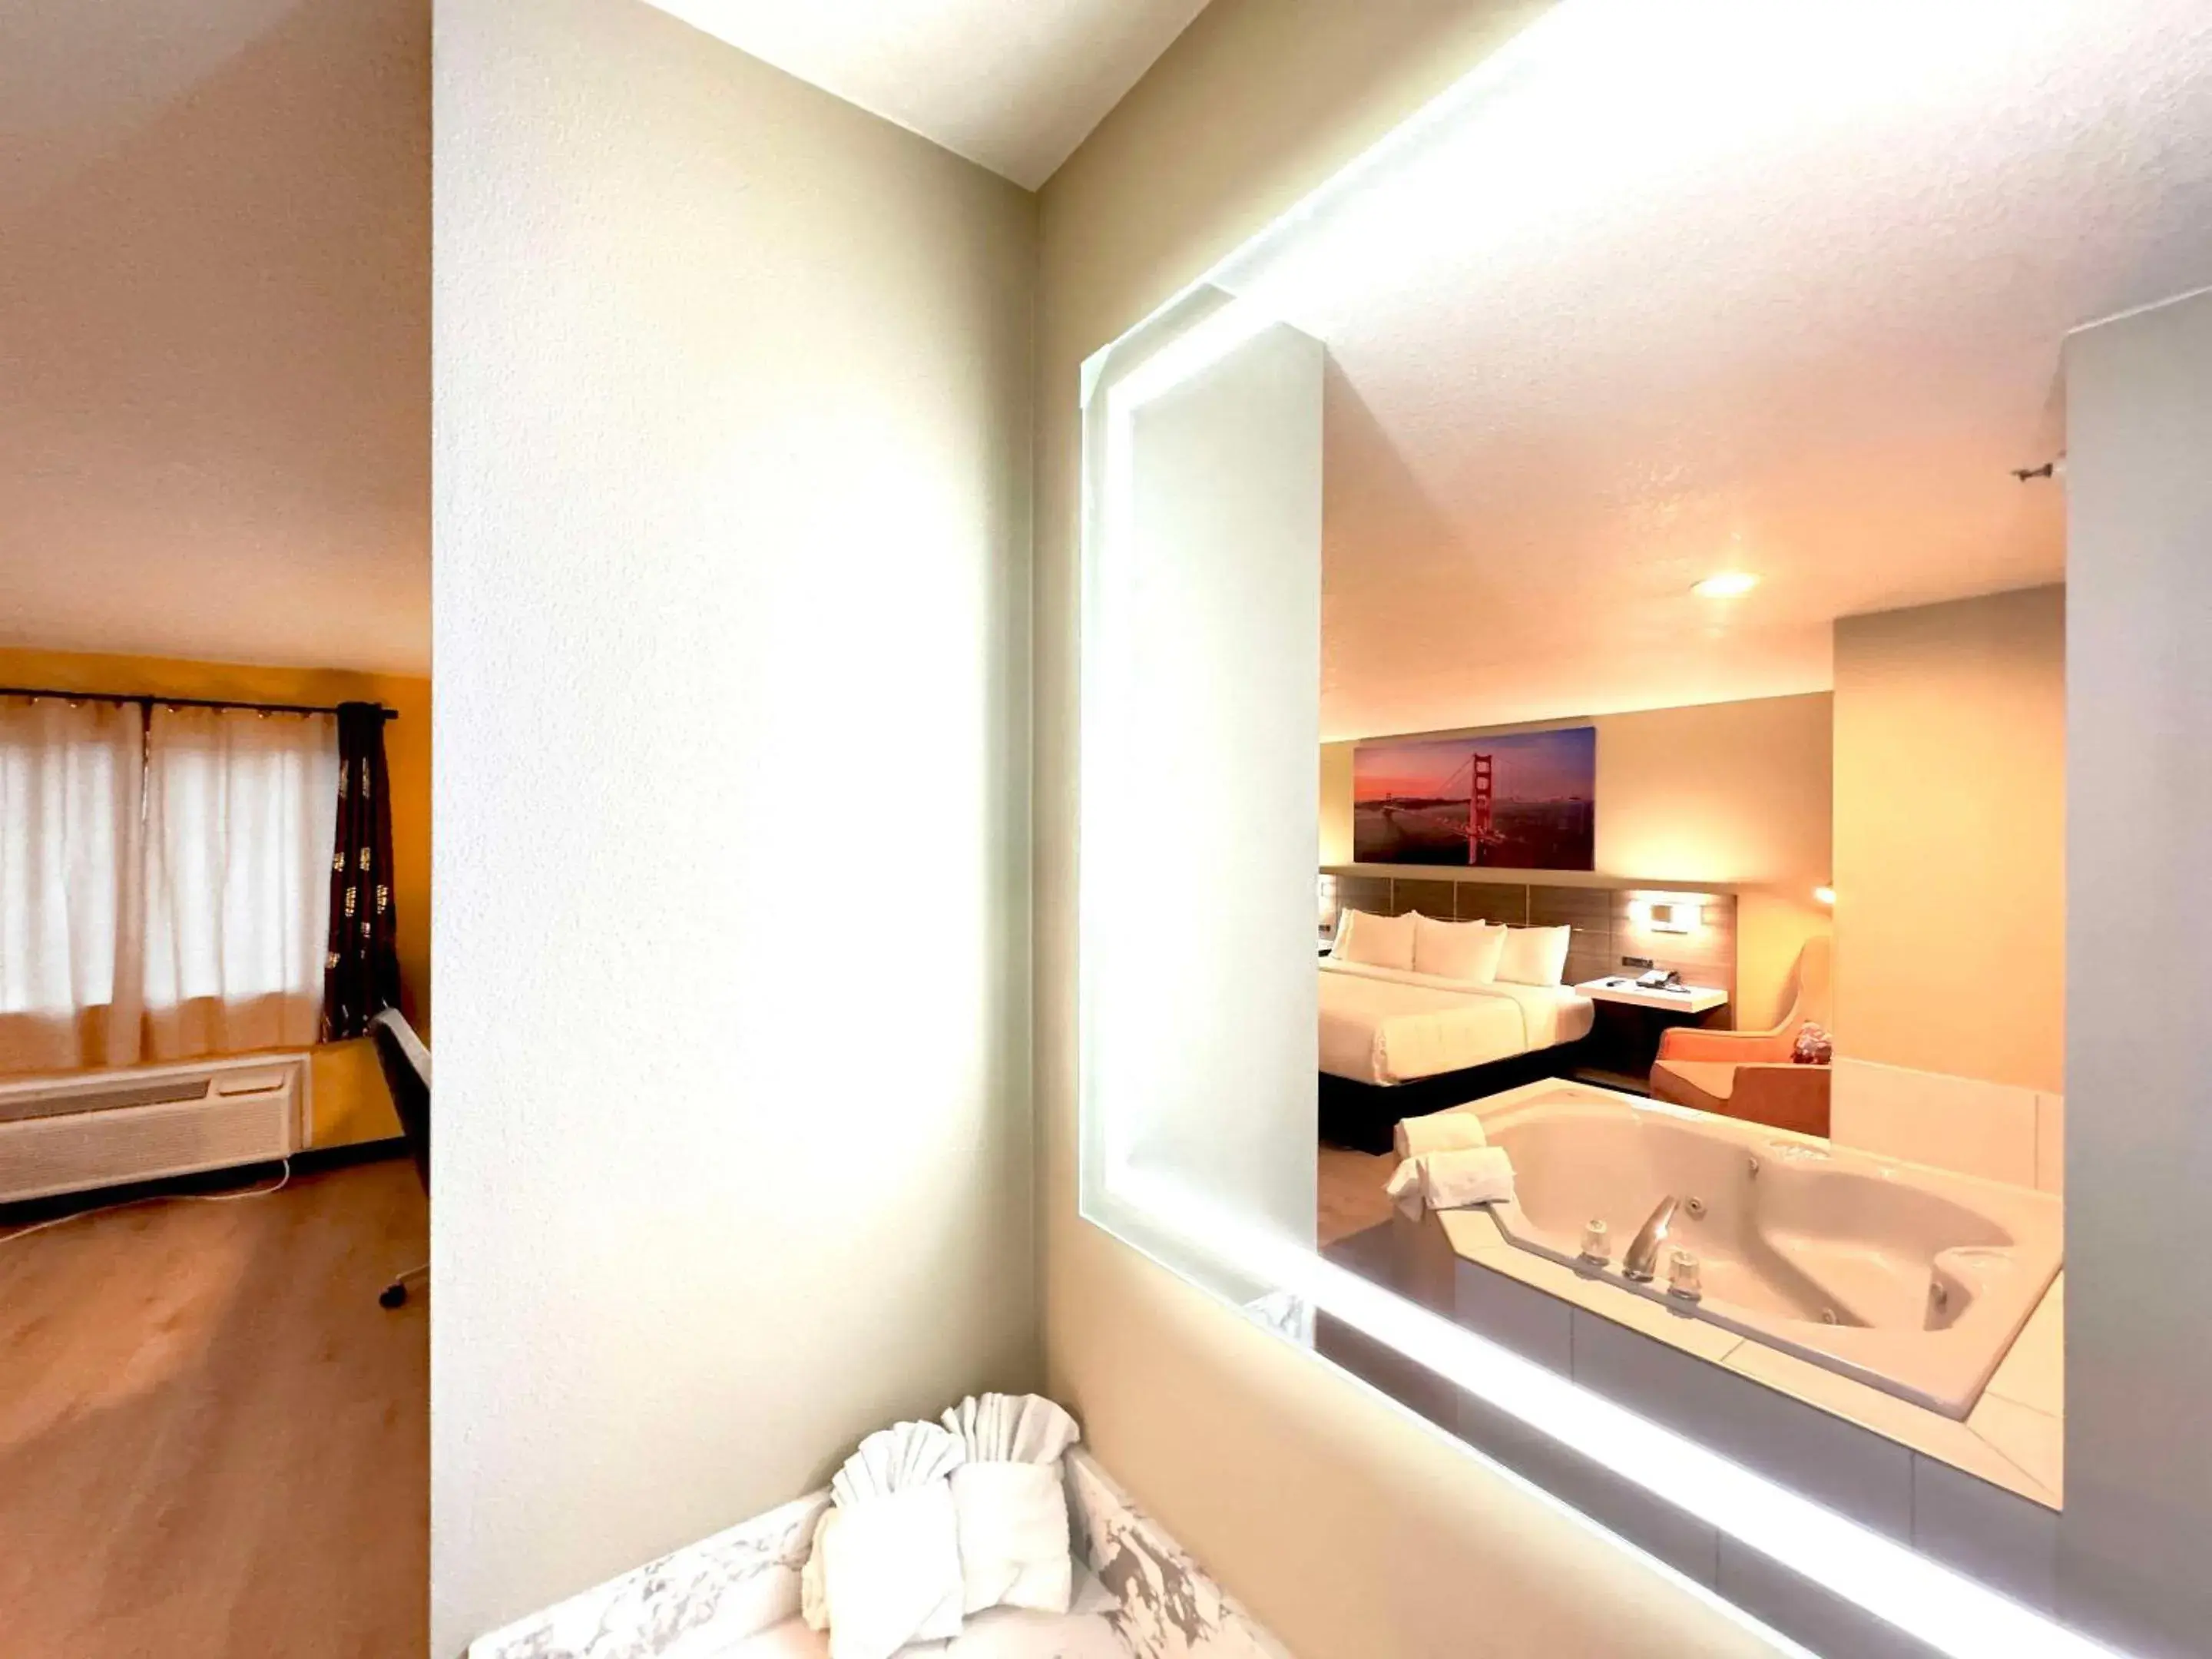 Bedroom, Bathroom in Rodeway Inn & Suites